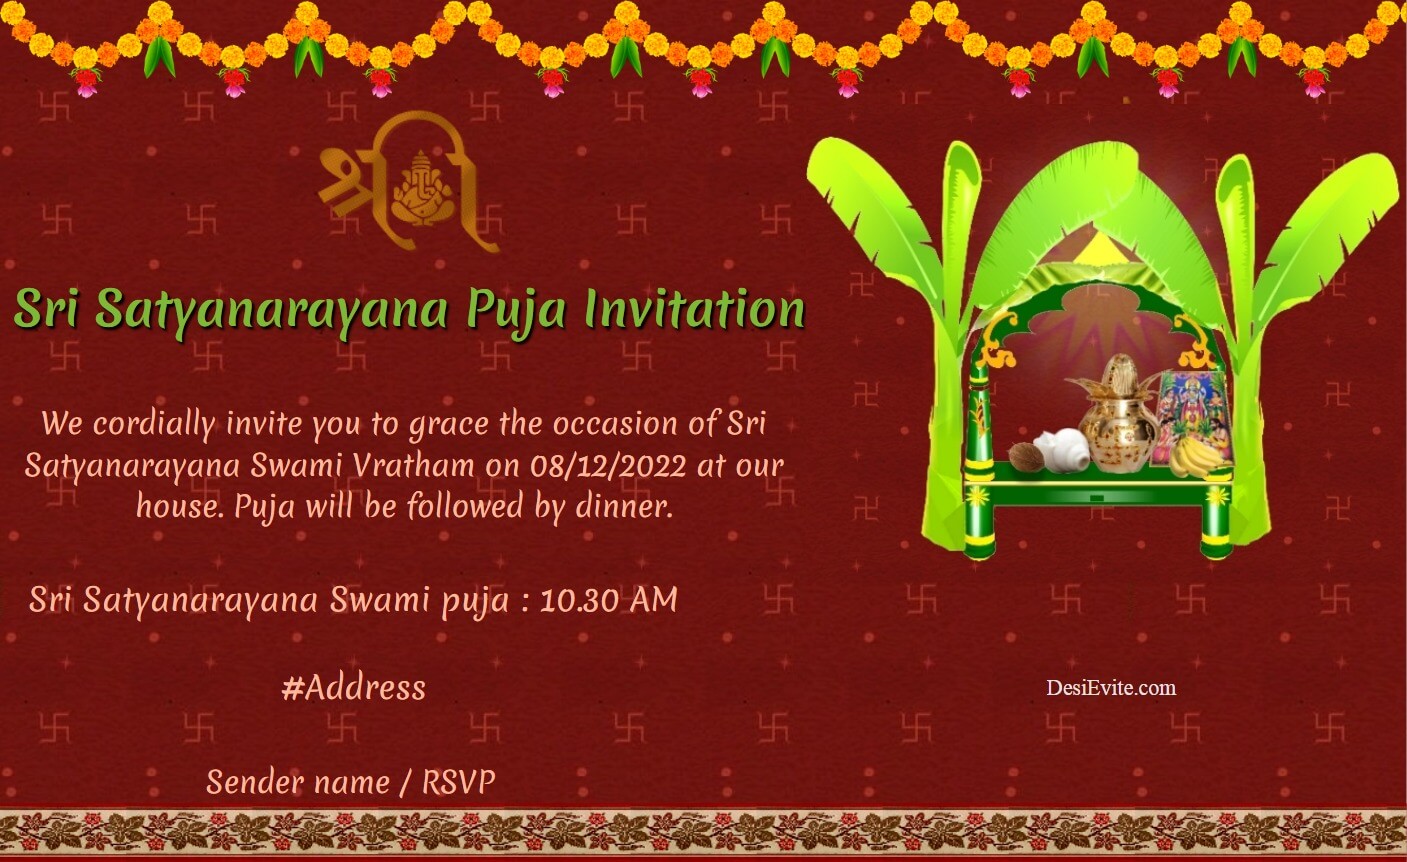 Sri Satyanarayana Puja Invitation